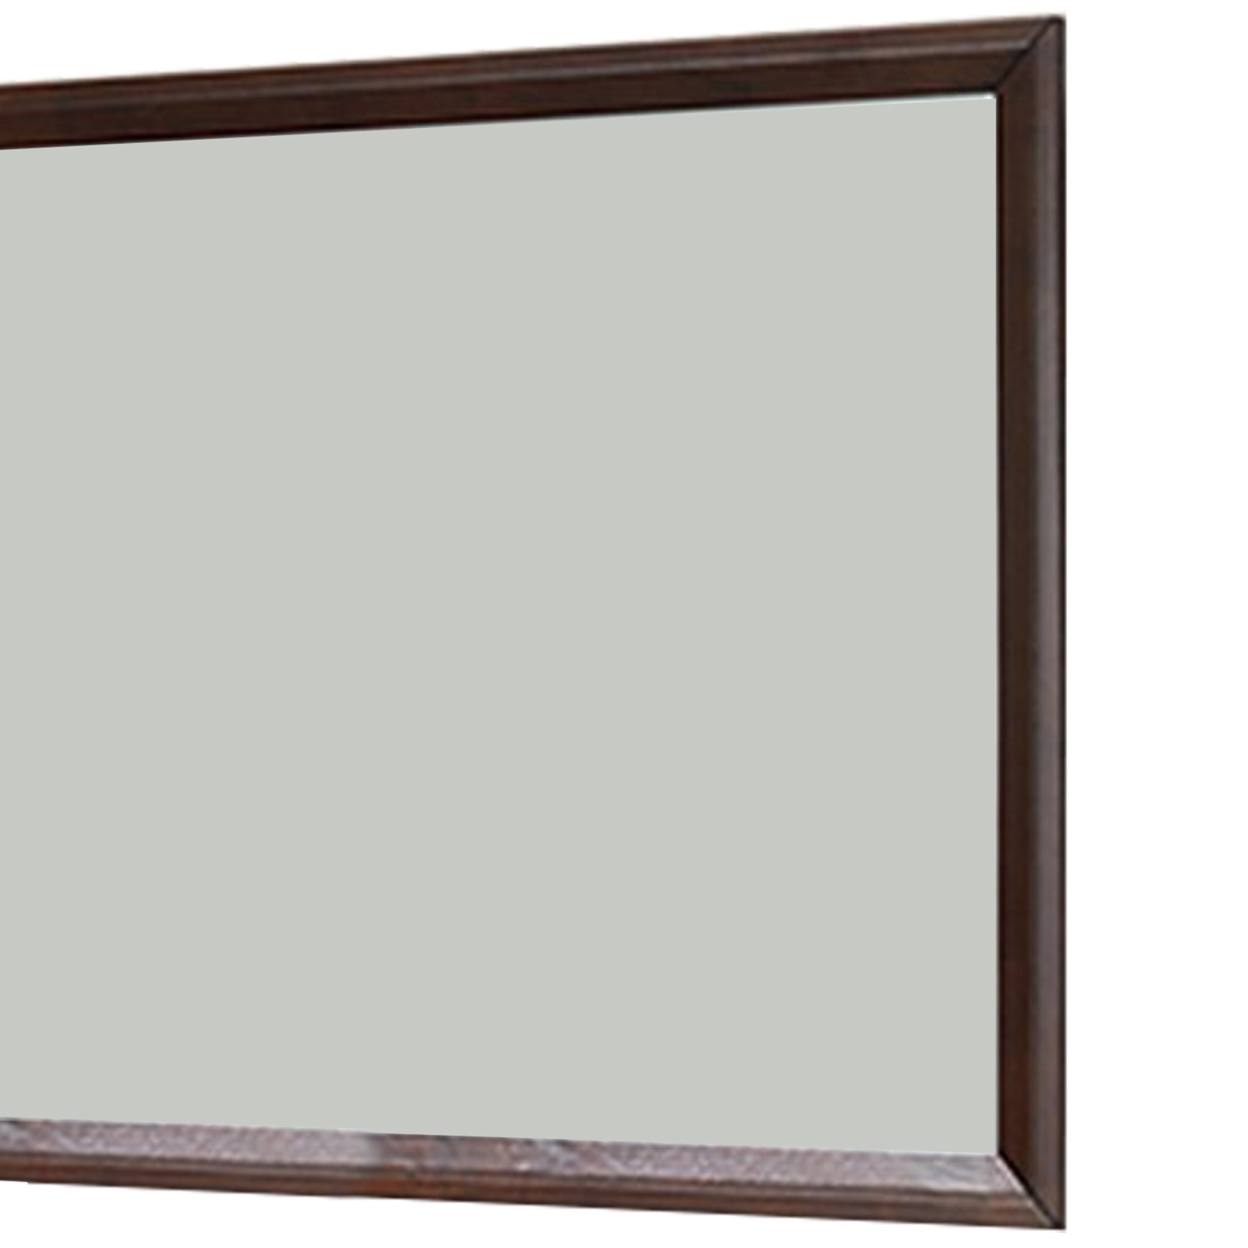 35 Inches Rectangular Wood Encased Mirror, Brown- Saltoro Sherpi